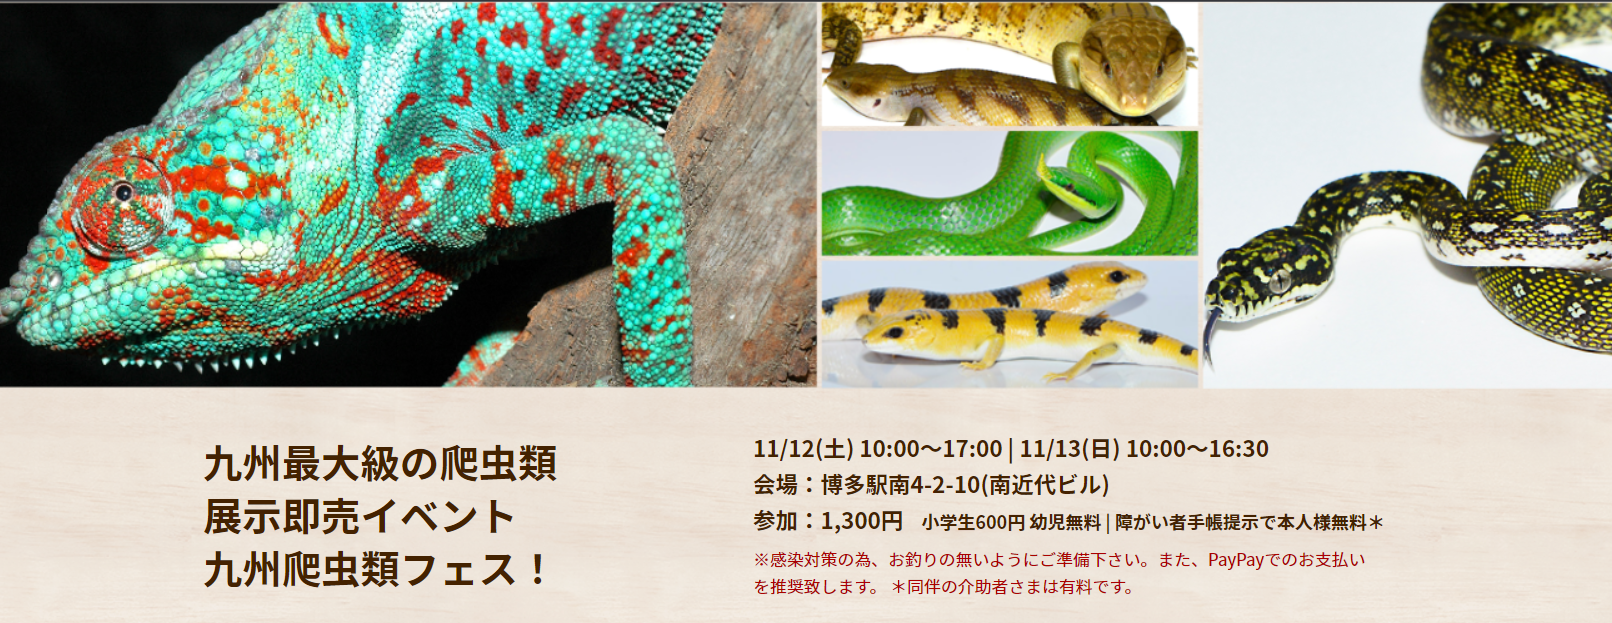 おすすめの爬虫類イベント 6選 23年に開催の爬虫類イベント 予定 51base